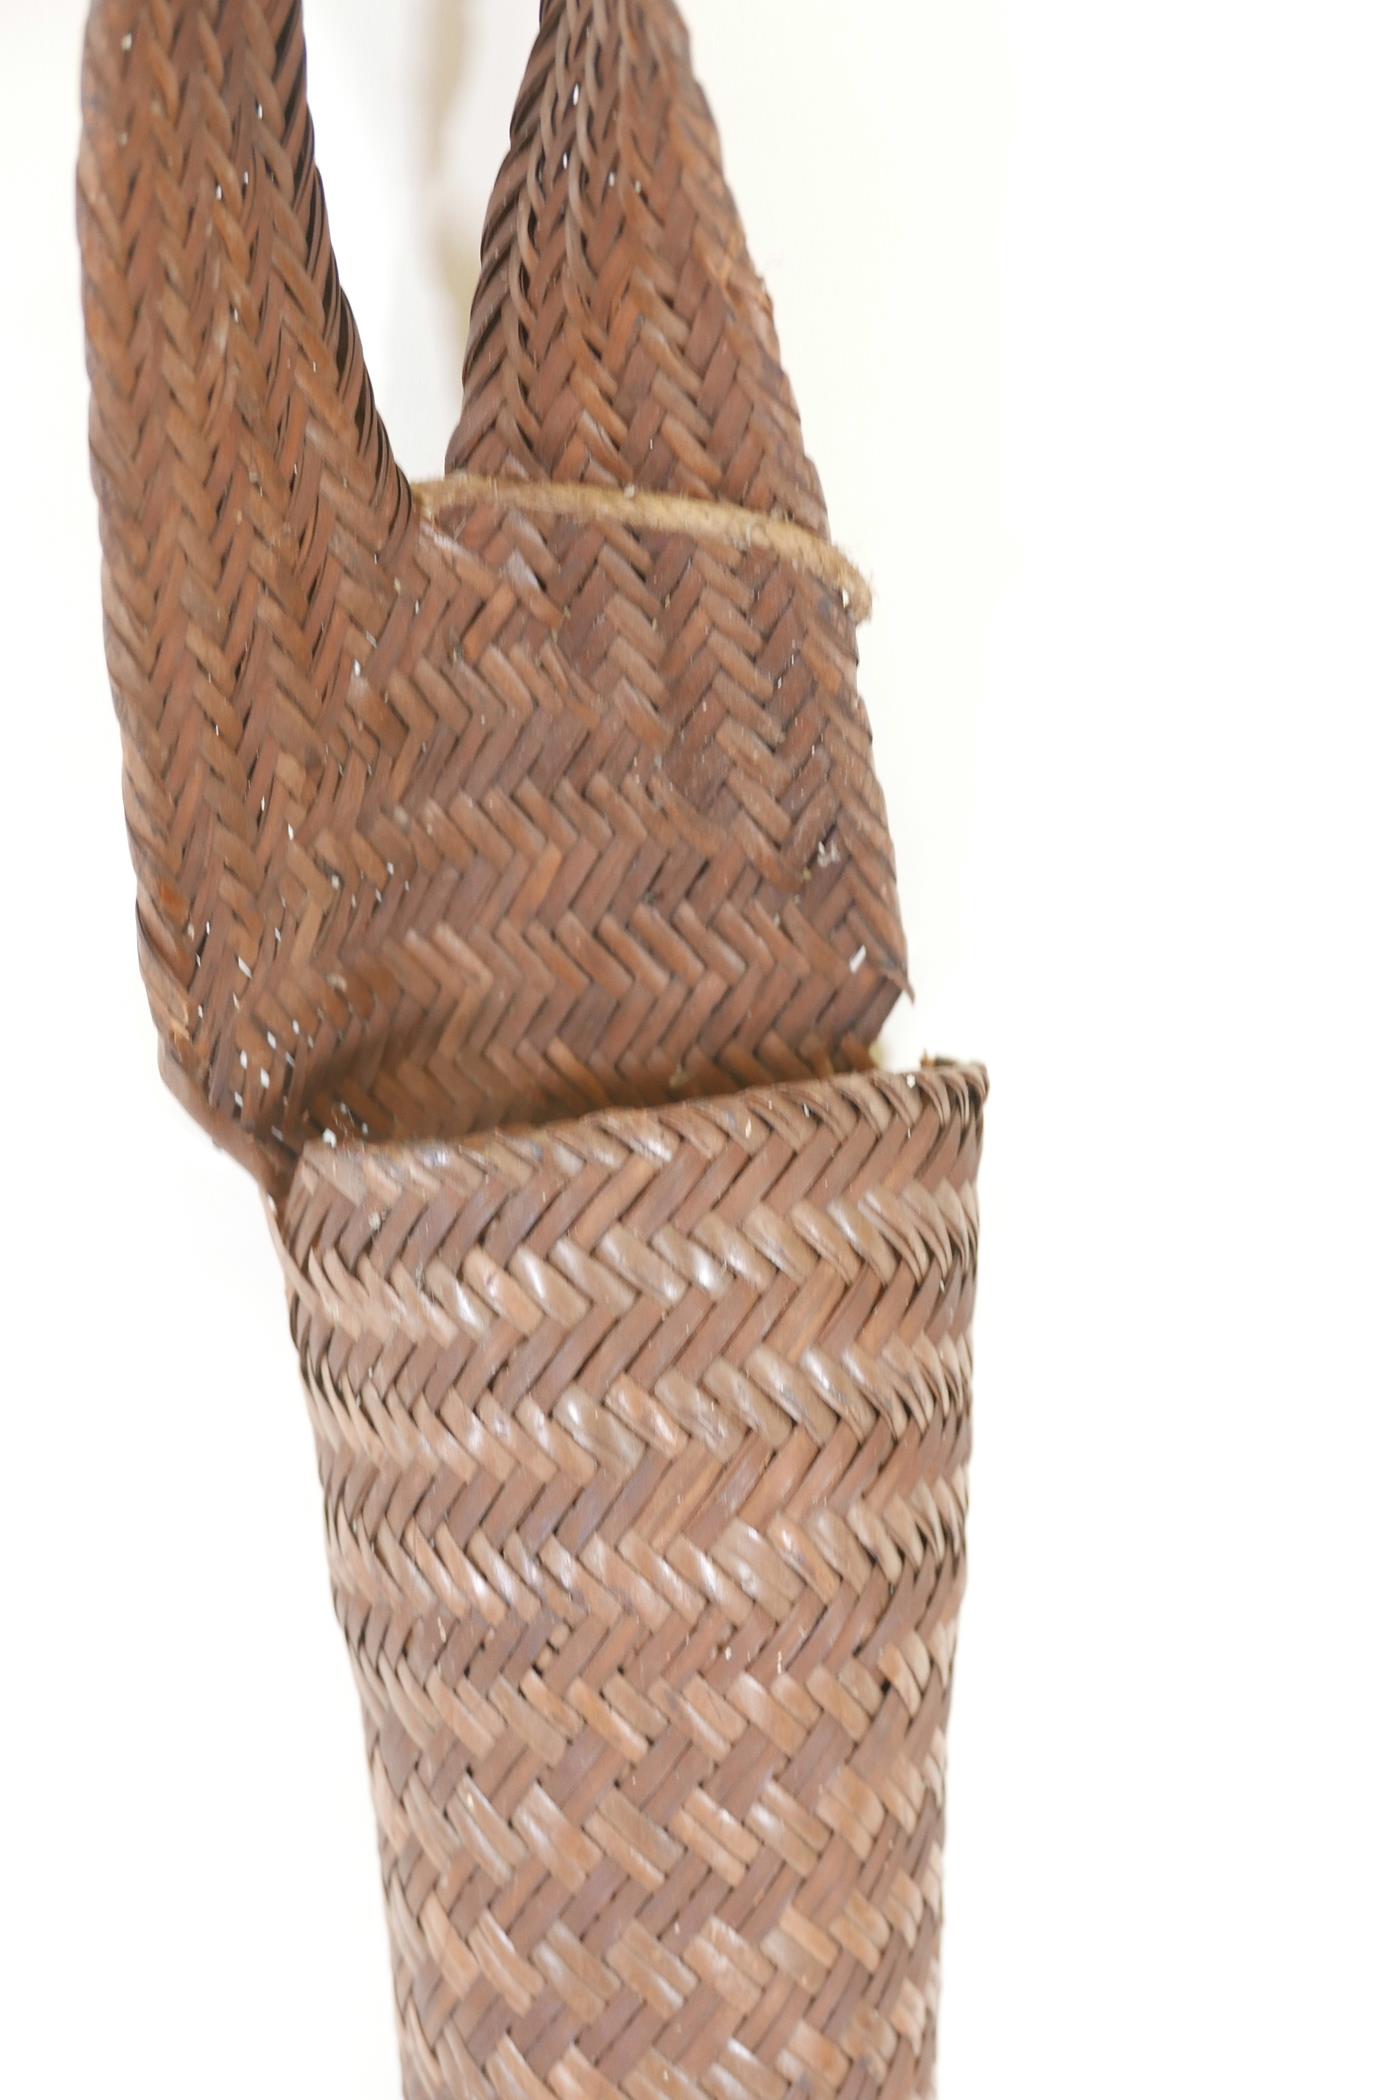 A Nagaland long woven rattan basket, 59" long - Image 2 of 2